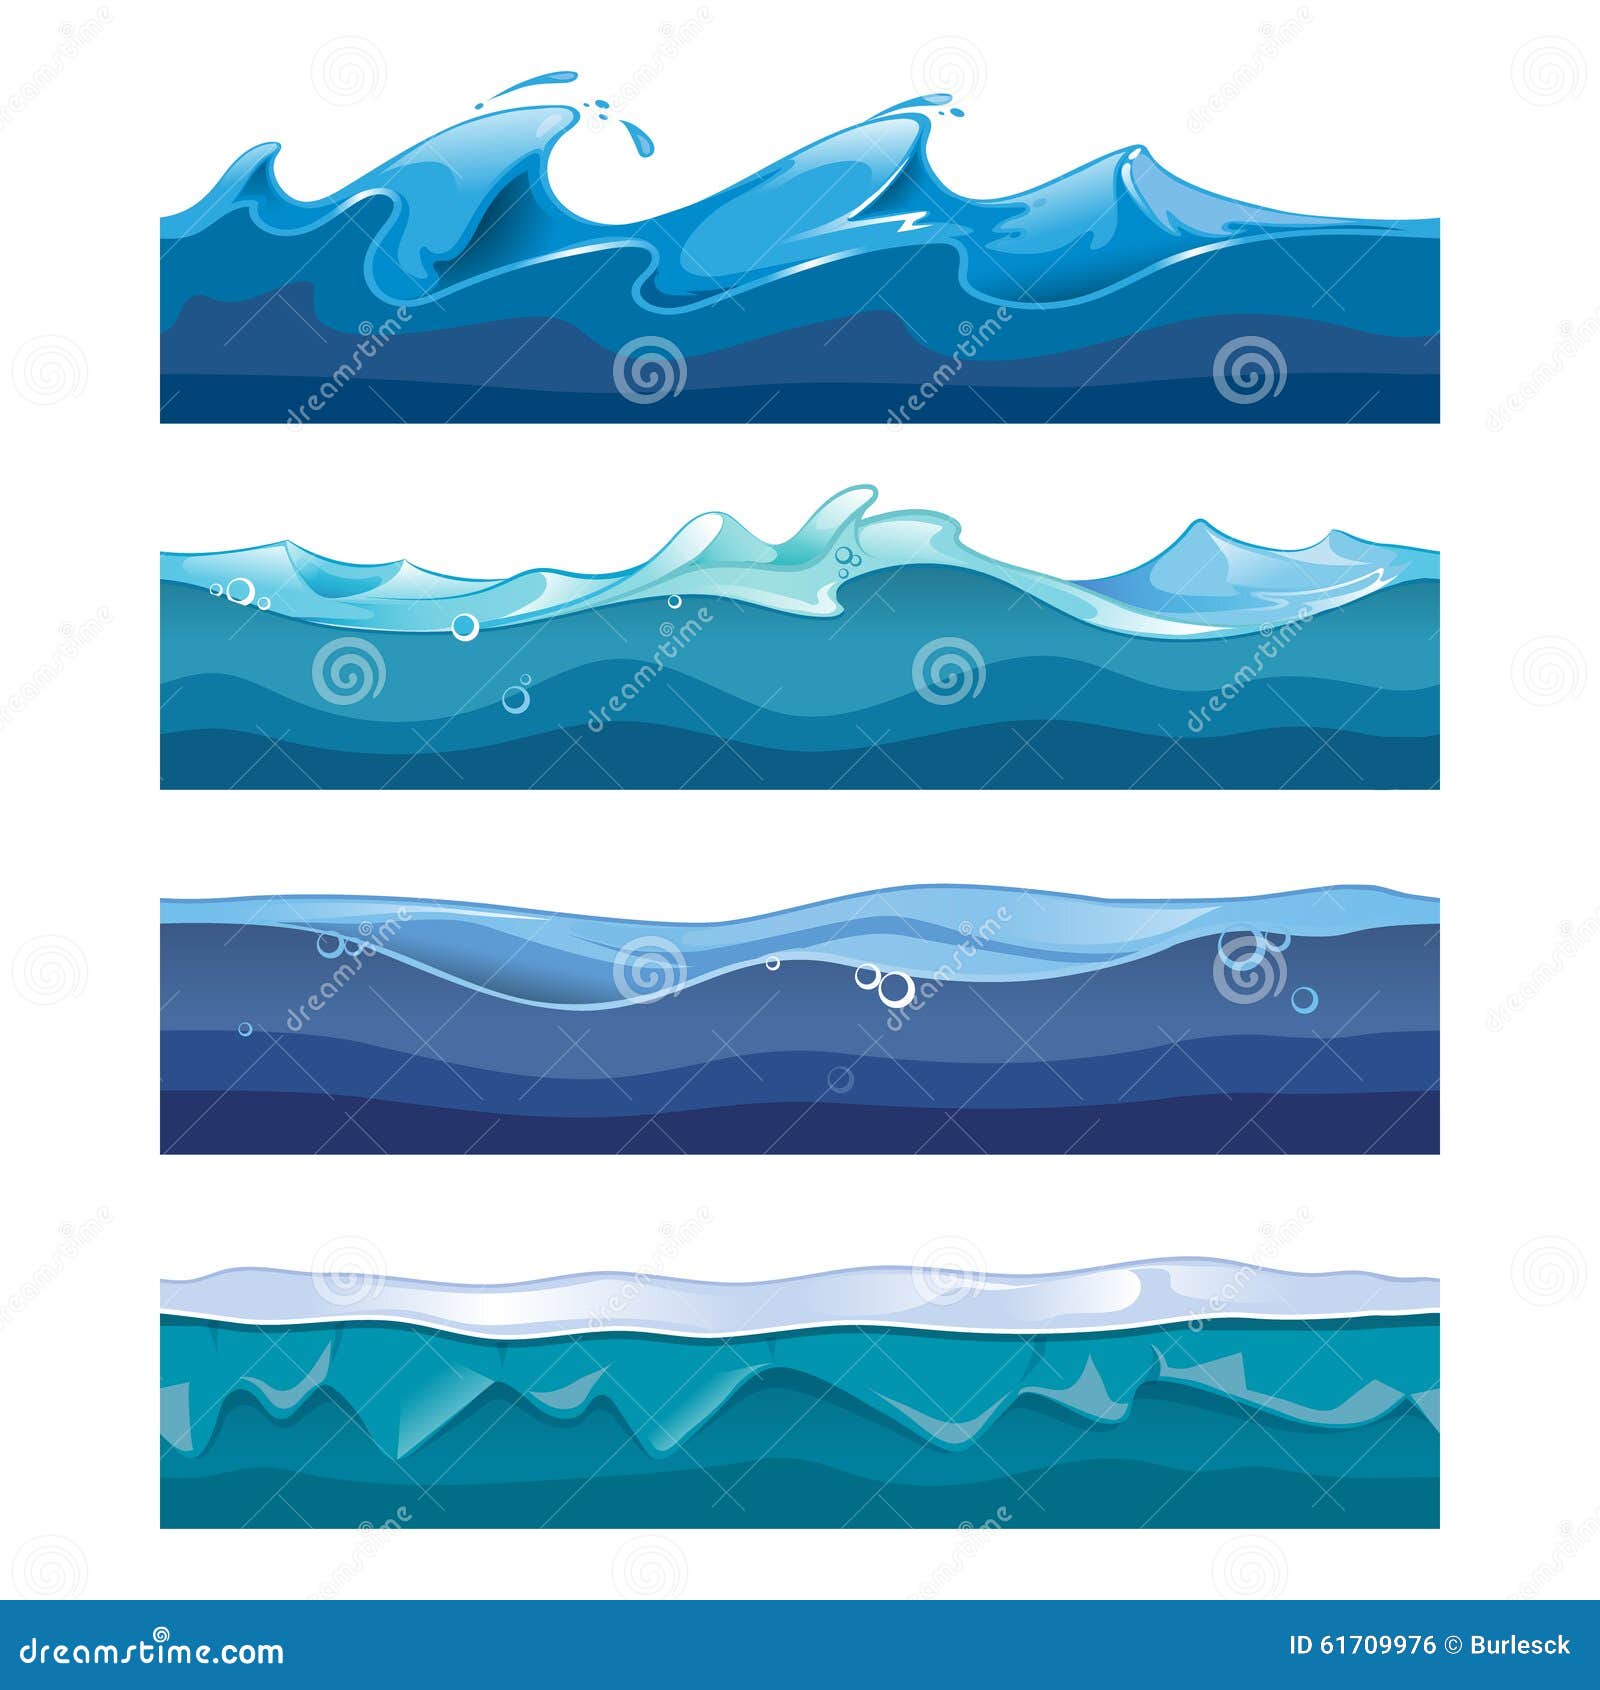 Seamless Ocean, Sea, Water Waves Vector Stock Vector ...
 Ocean Water Waves Cartoon